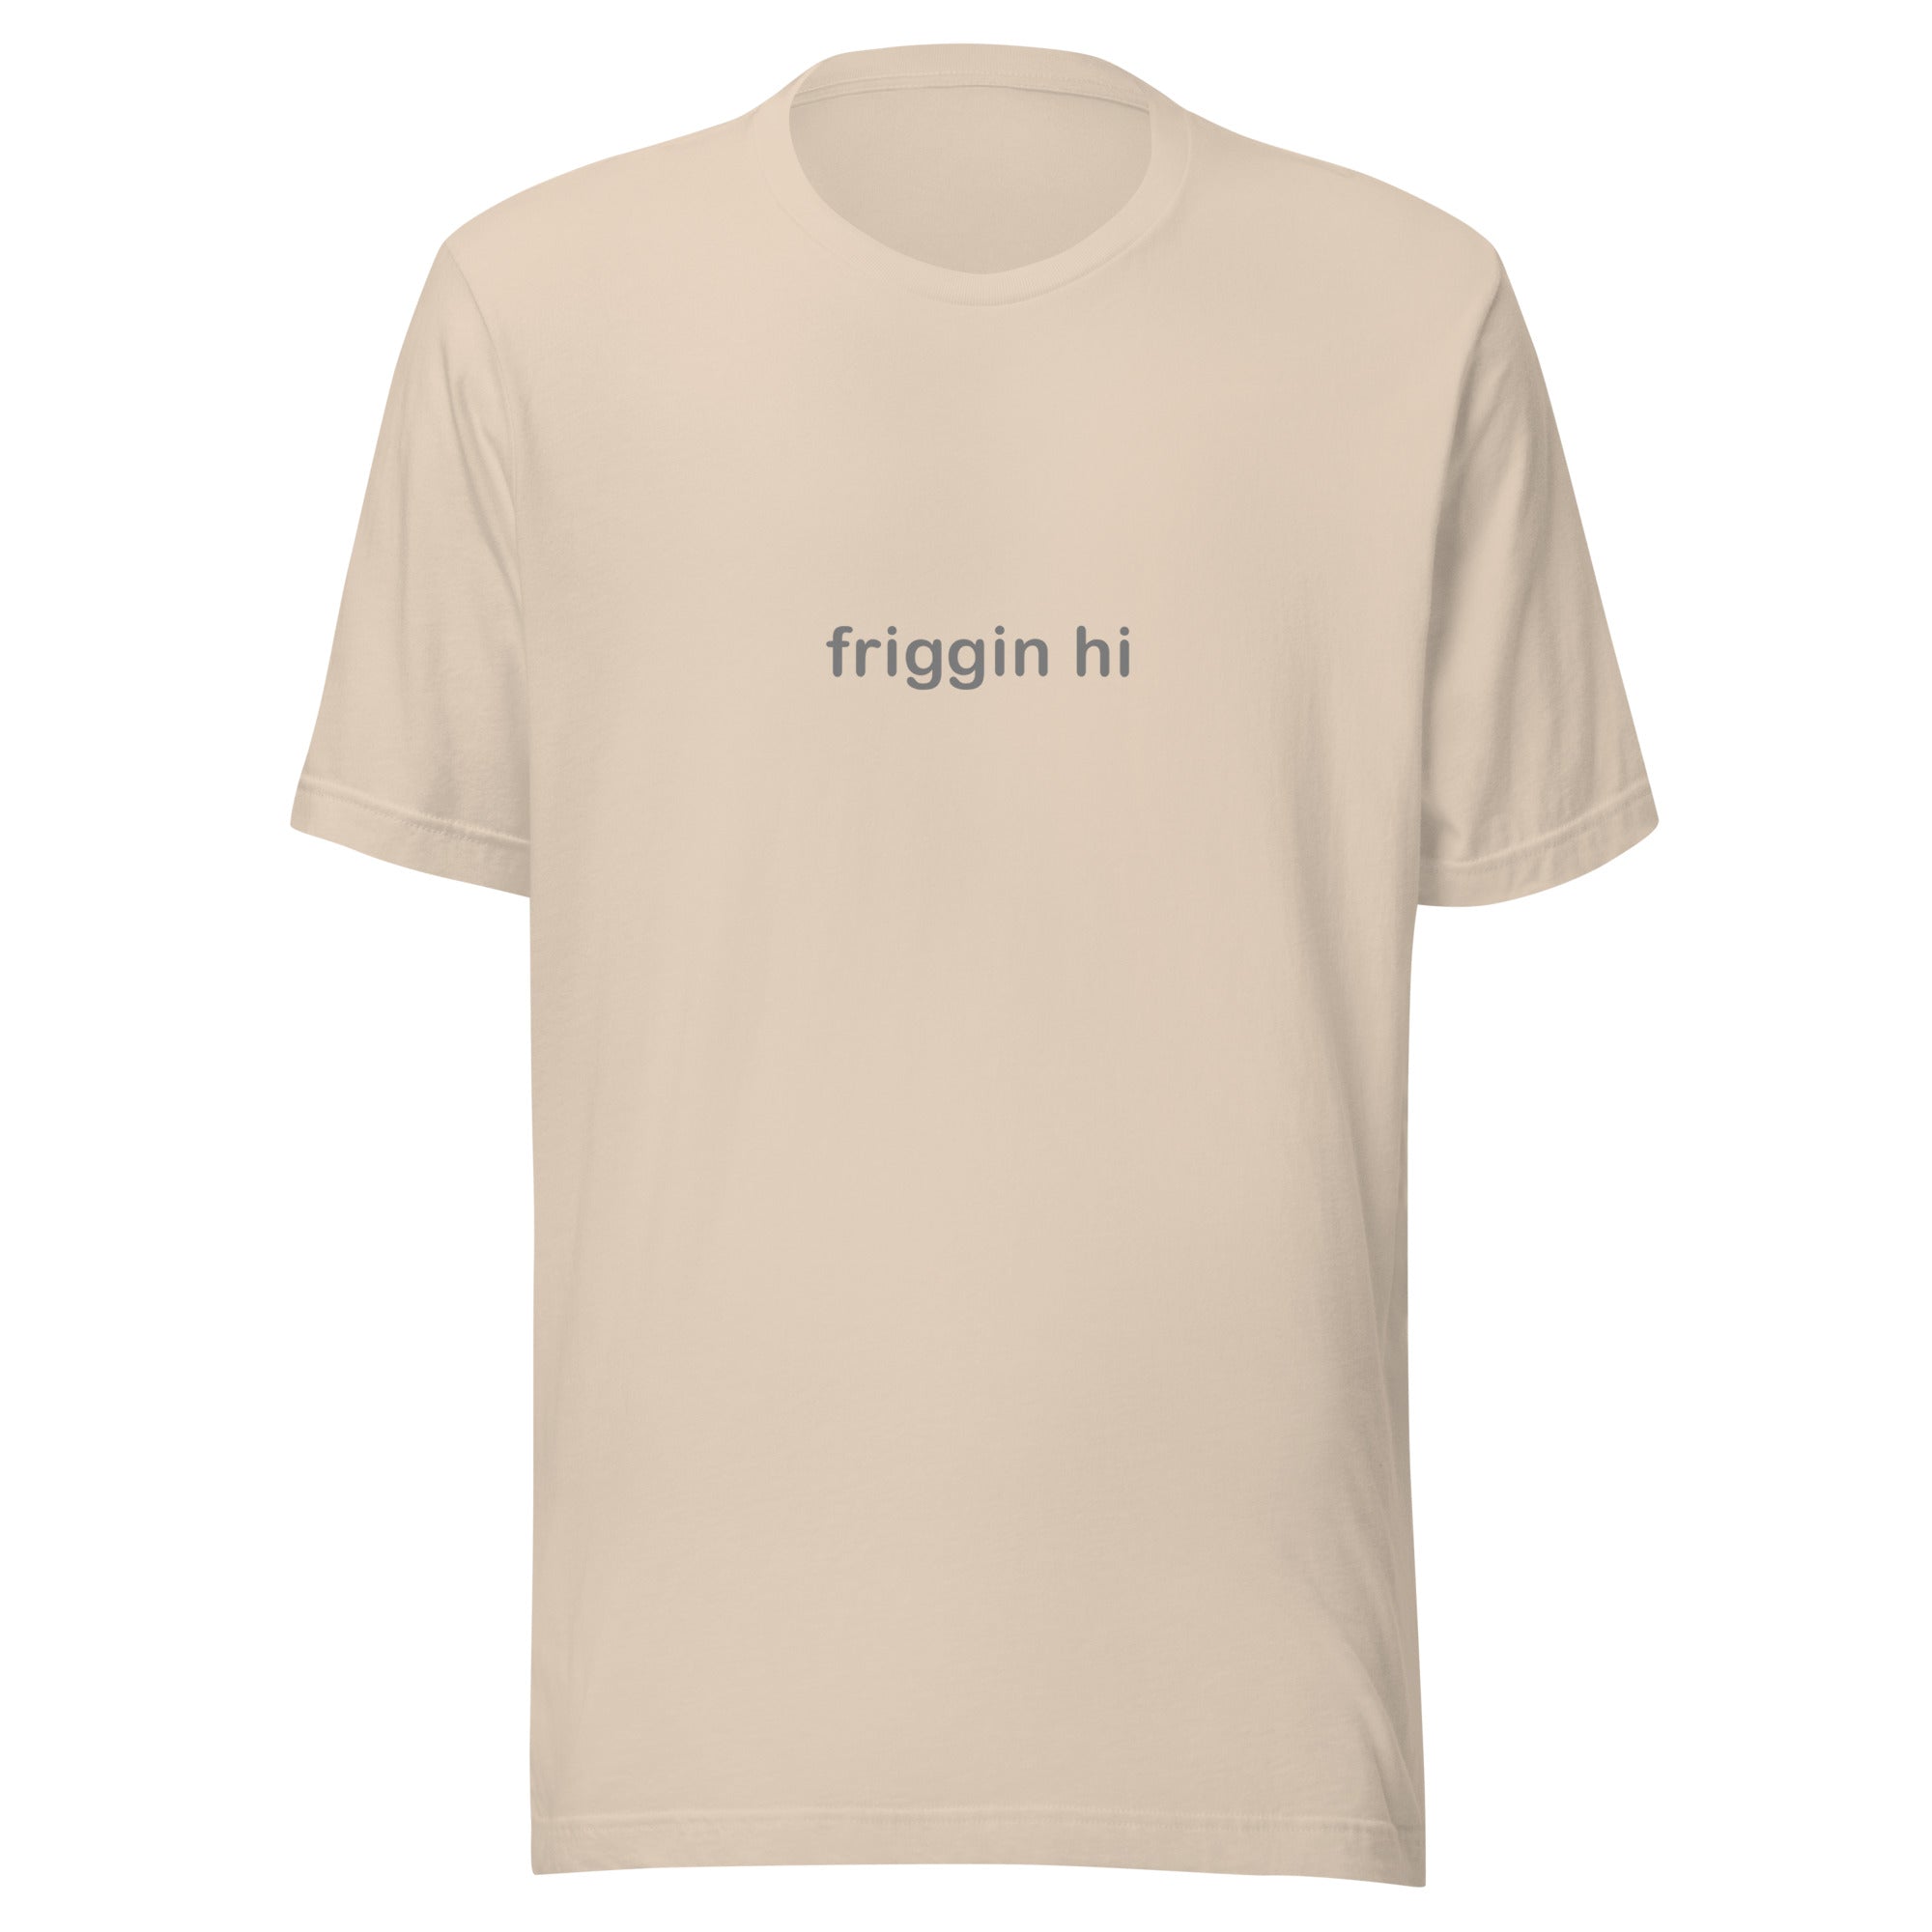 "Friggin Hi, Friggin Bye" Grey Text Adult Unisex t-shirt